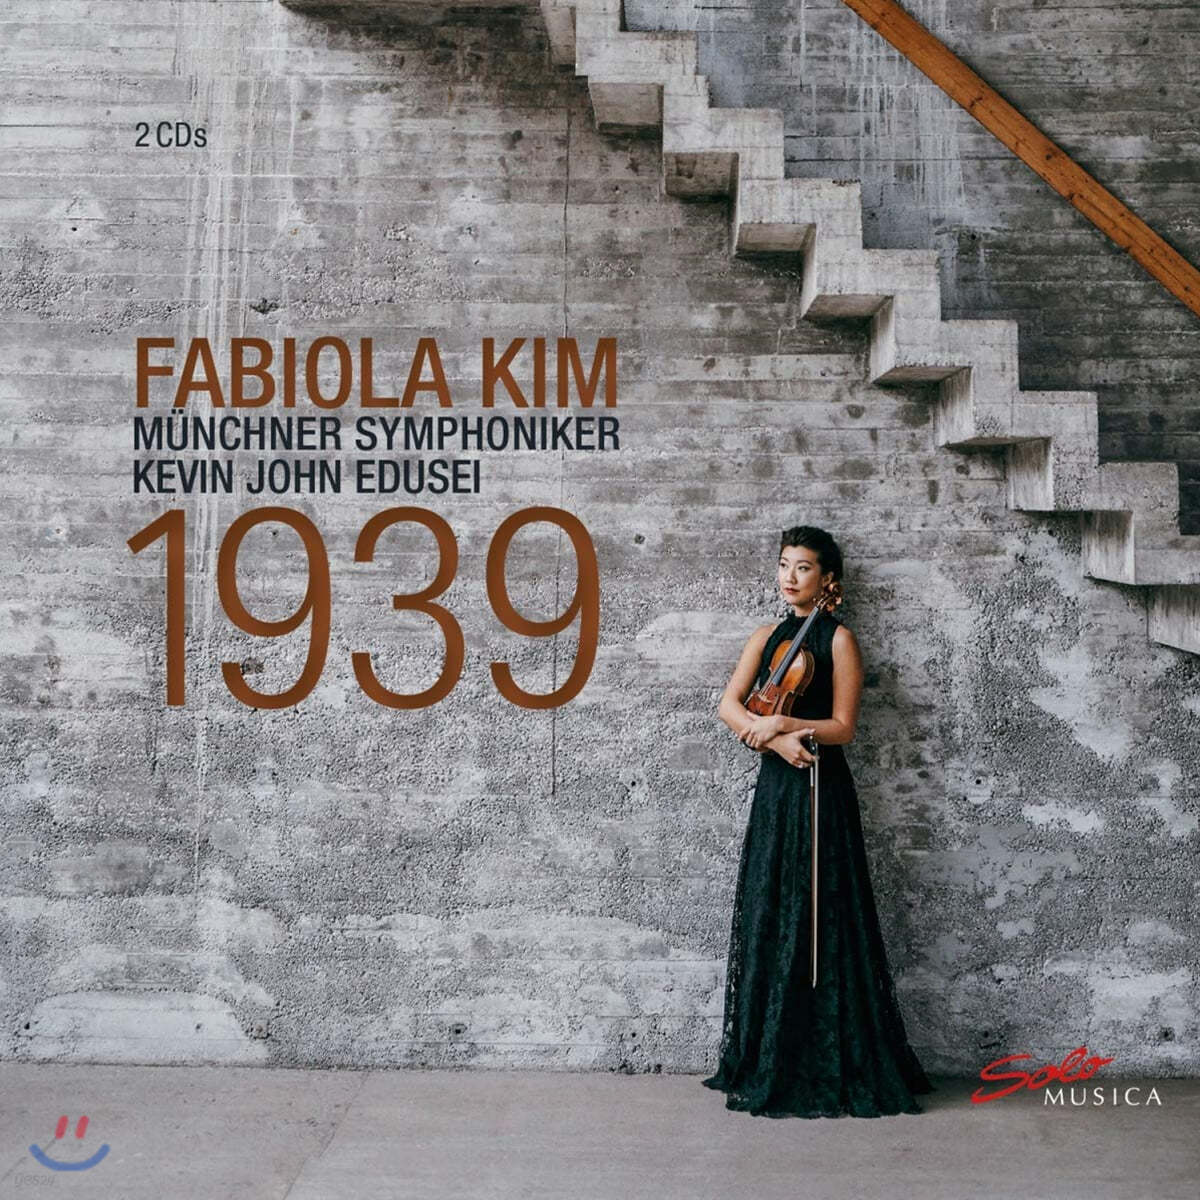 김화라 (Fabiola Kim) - 윌리엄 월튼 / 카를 하르트만 / 바르톡: 바이올린 협주곡 모음집 (Fabiola Kim - 1939: Walton / Harmann / Bartok: VIolin Concertos) 